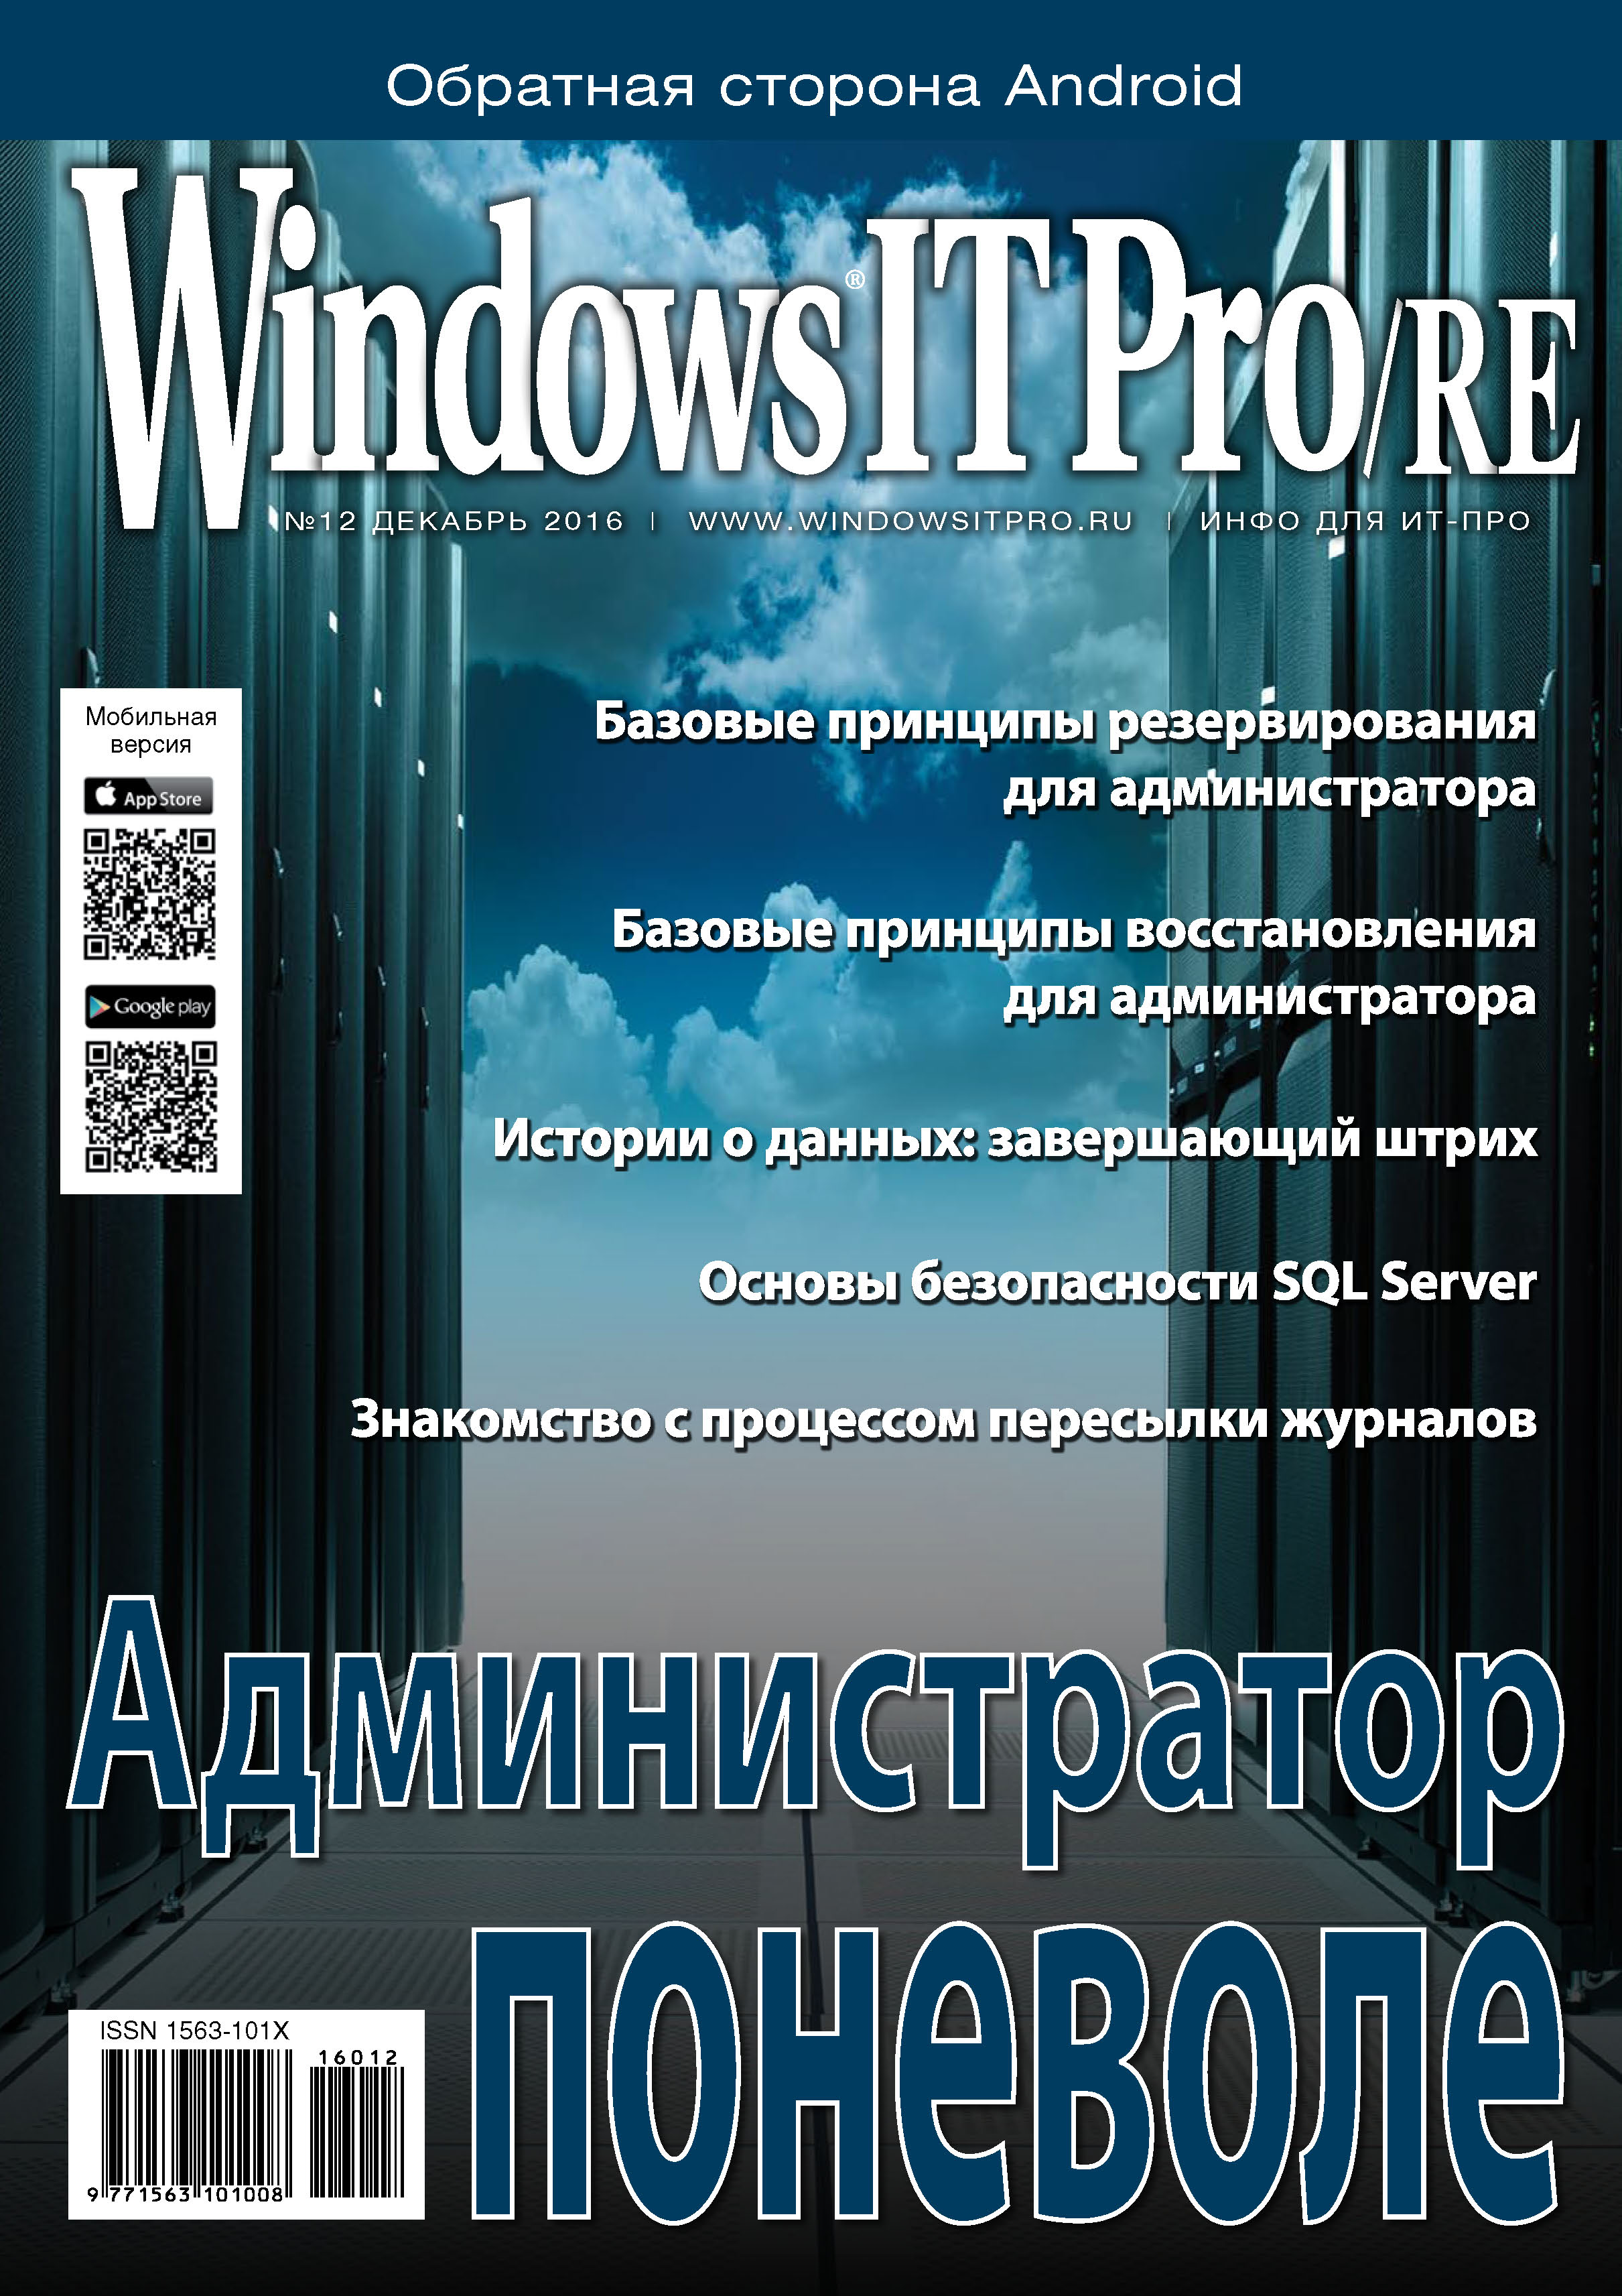 Книга Windows IT Pro 2016 Windows IT Pro/RE №12/2016 созданная Открытые системы может относится к жанру компьютерные журналы, ОС и сети, программы. Стоимость электронной книги Windows IT Pro/RE №12/2016 с идентификатором 22215582 составляет 484.00 руб.